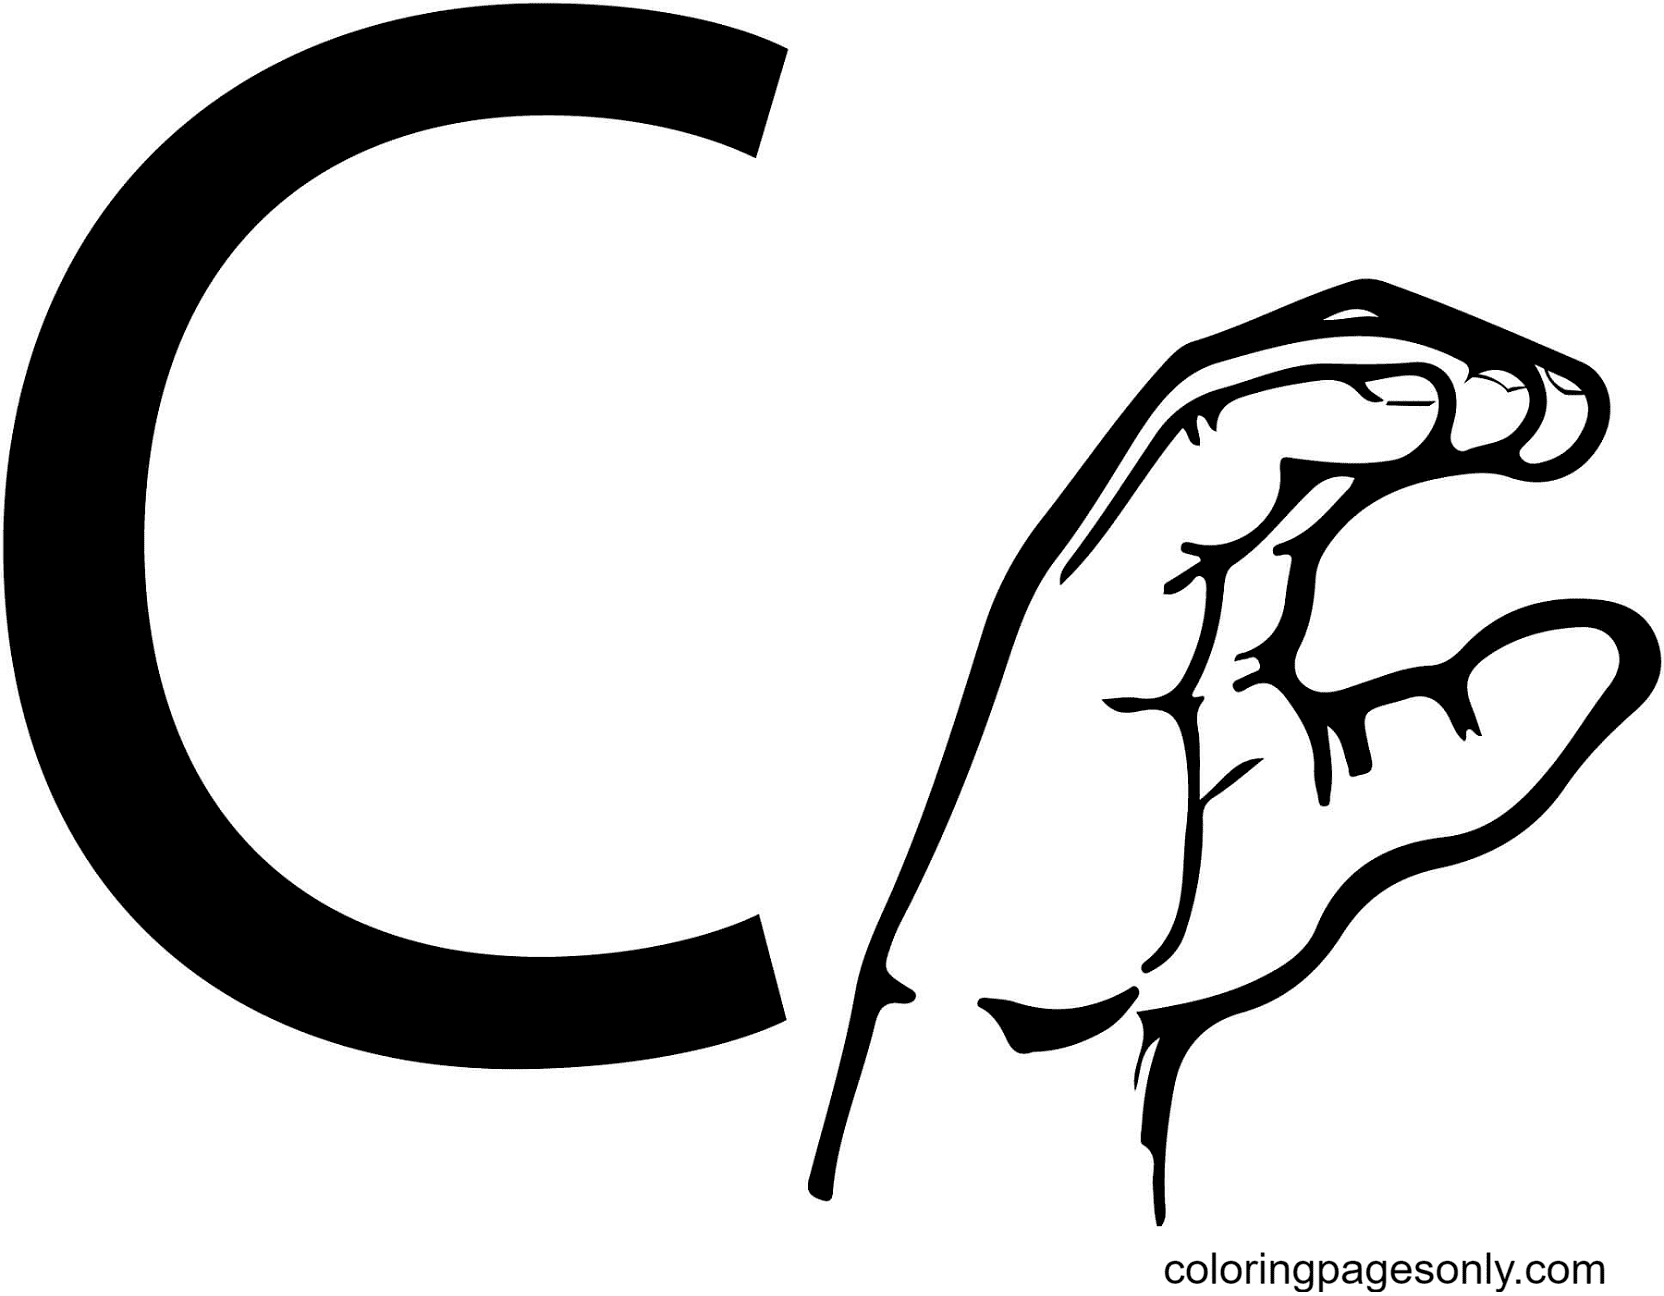 Lenguaje de señas ASL Letra C de la letra C